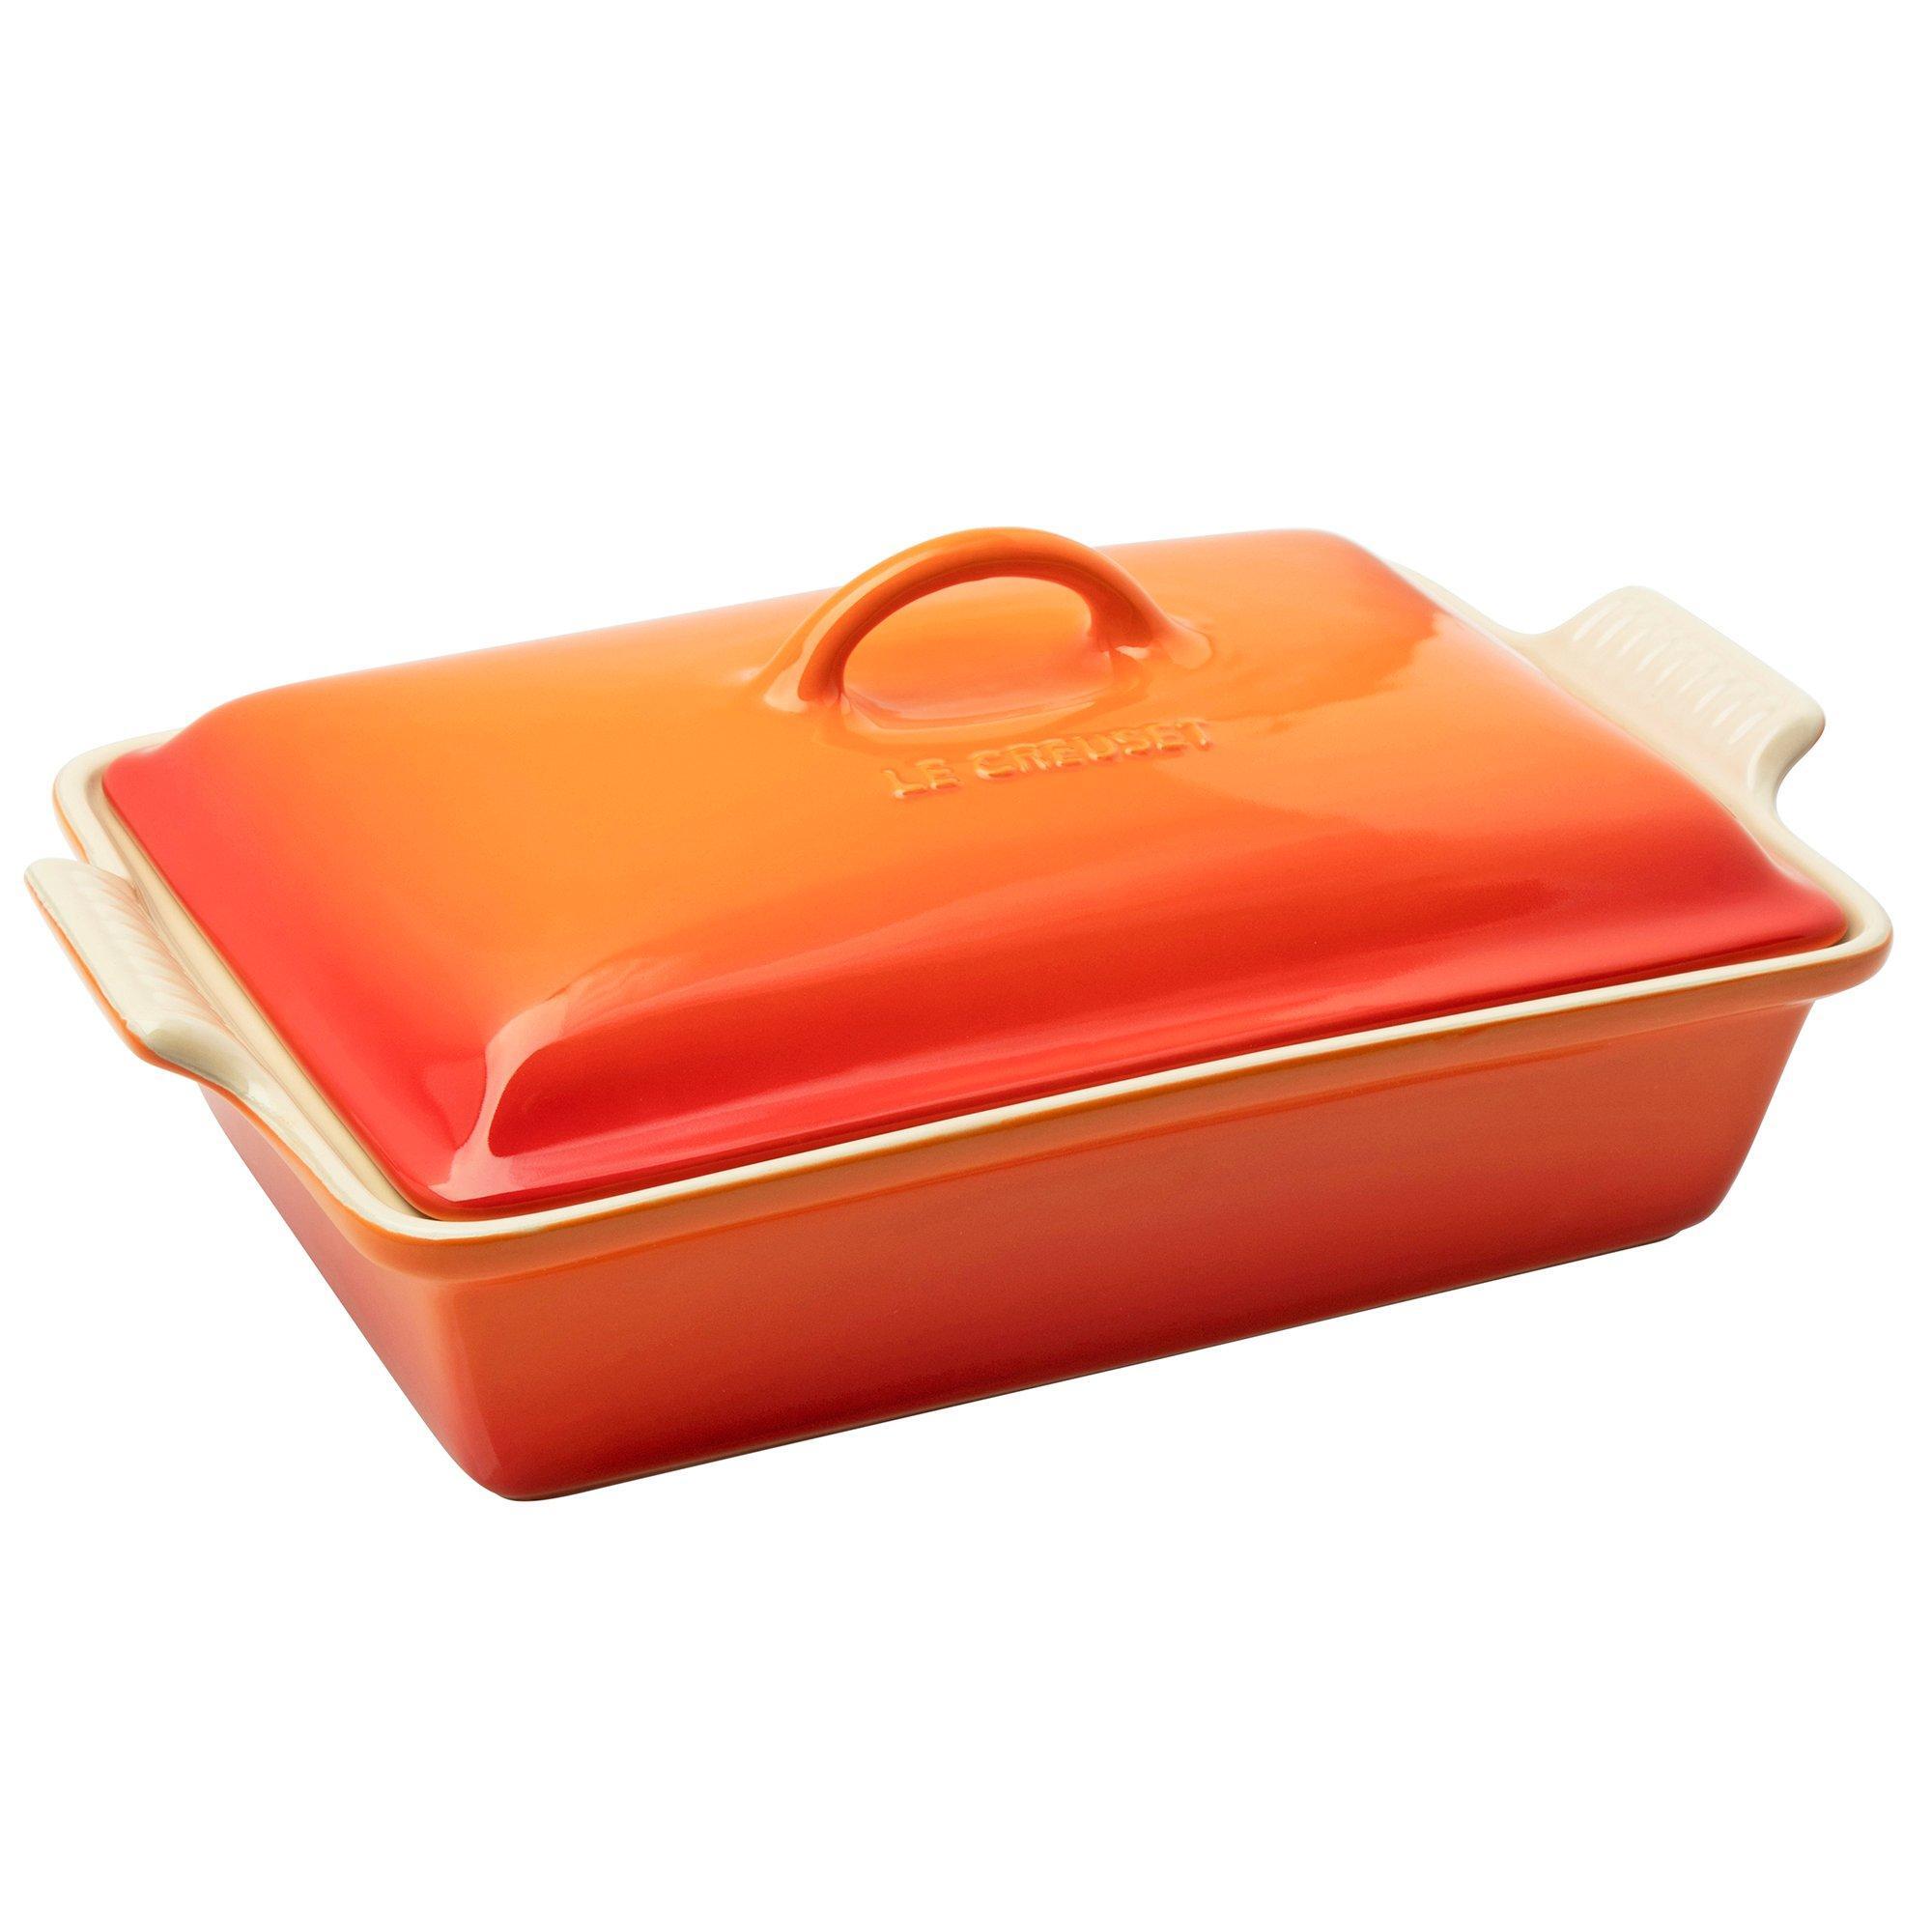 Le Creuset Le Creuset ovenschaal rechthoekig met deksel, 33 cm, oranje rood